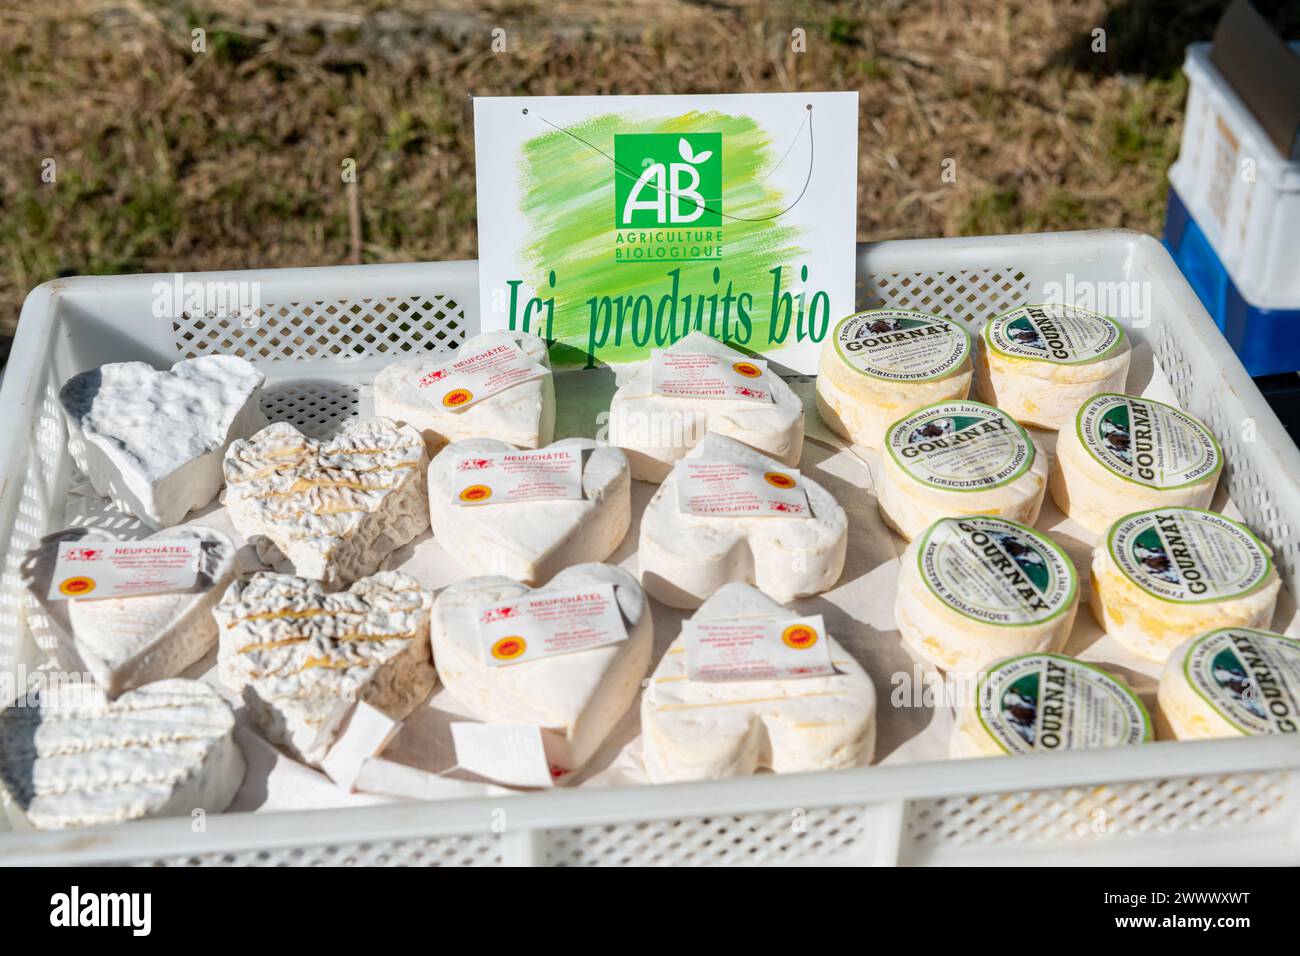 Mercato agricolo a Dampierre-en-Bray (Francia settentrionale): Agricoltura biologica, Neufchatel e Gournay produzione di formaggio biologico presso l'azienda di Hyaunet, Direct S Foto Stock